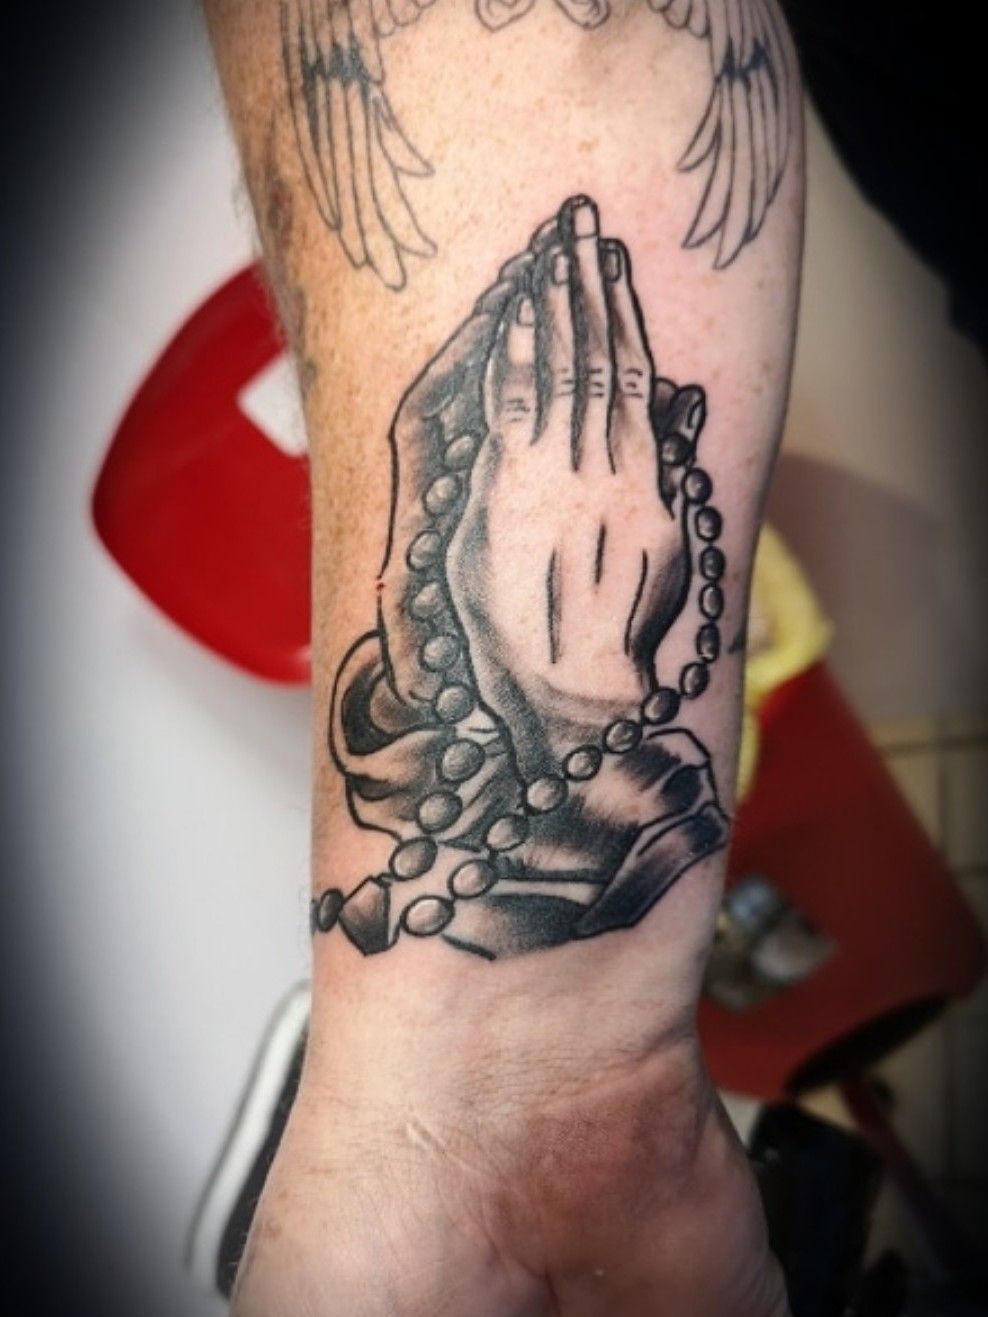 rosary around hand tattooTikTok Search